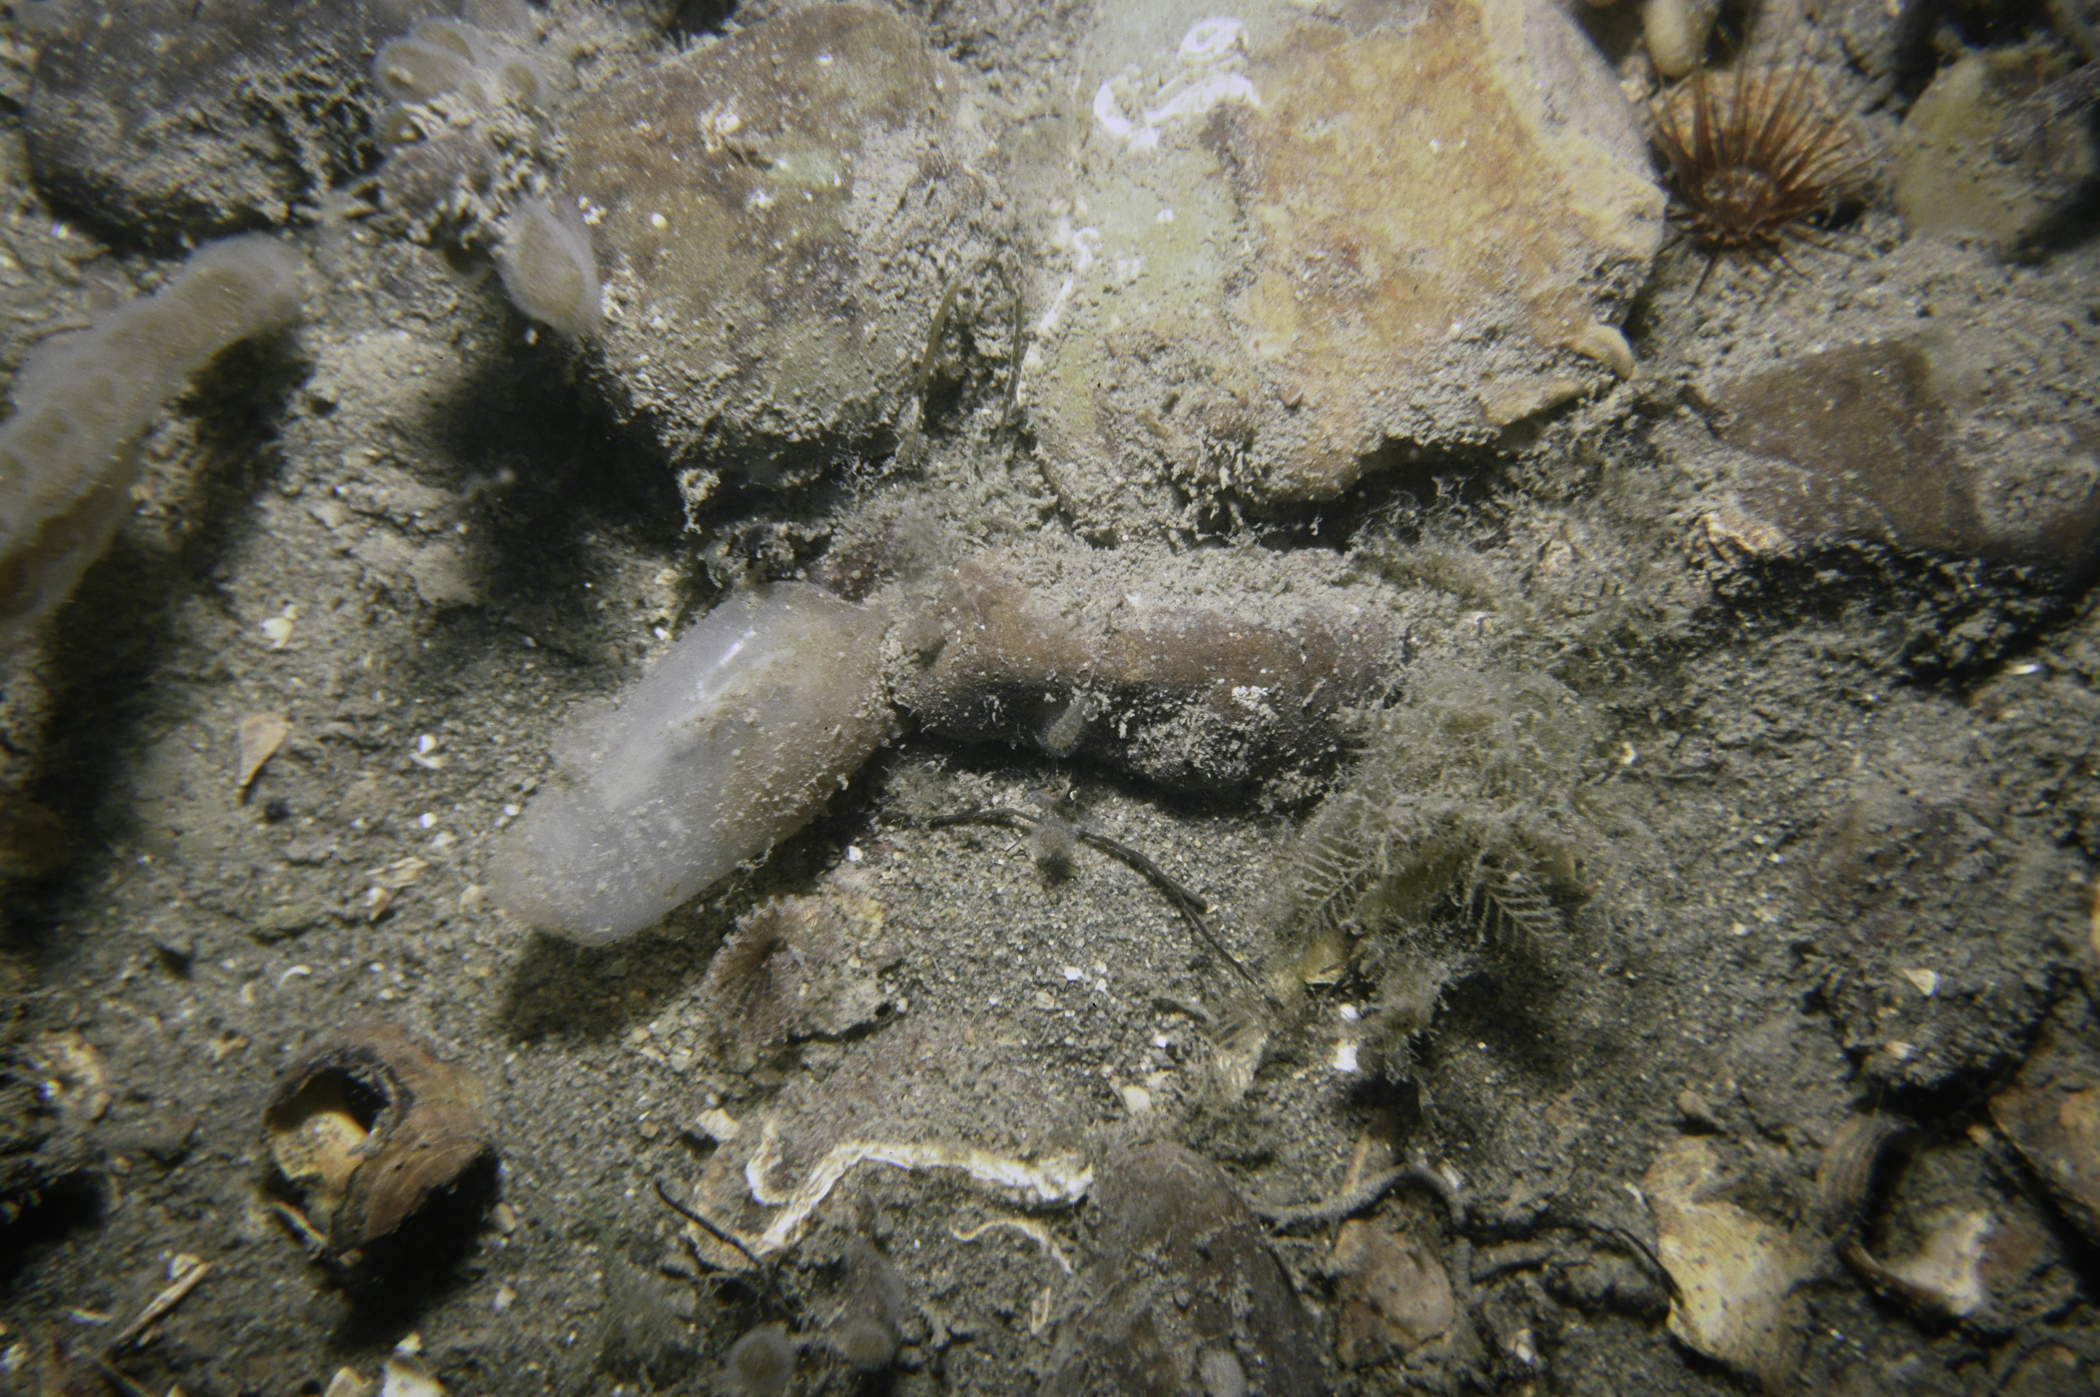 Synarachnactis lloydii, Hydrallmania falcata, Ascidiella scabra. Site: E of Greenore Point, Carlingford Lough. 